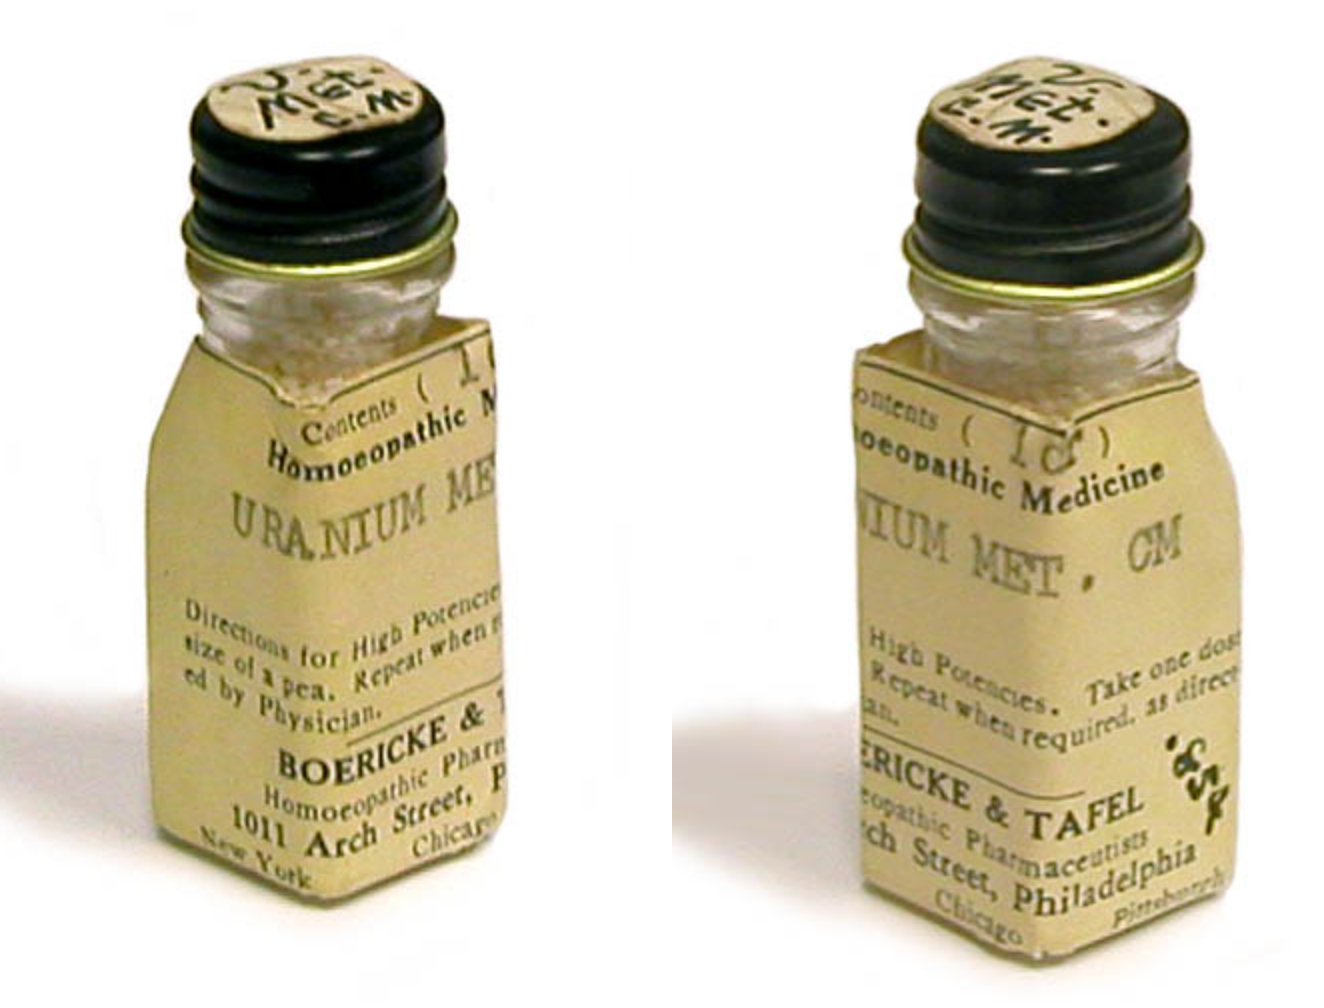 Uranium Homeopathic Medicine (ca. 1940s)